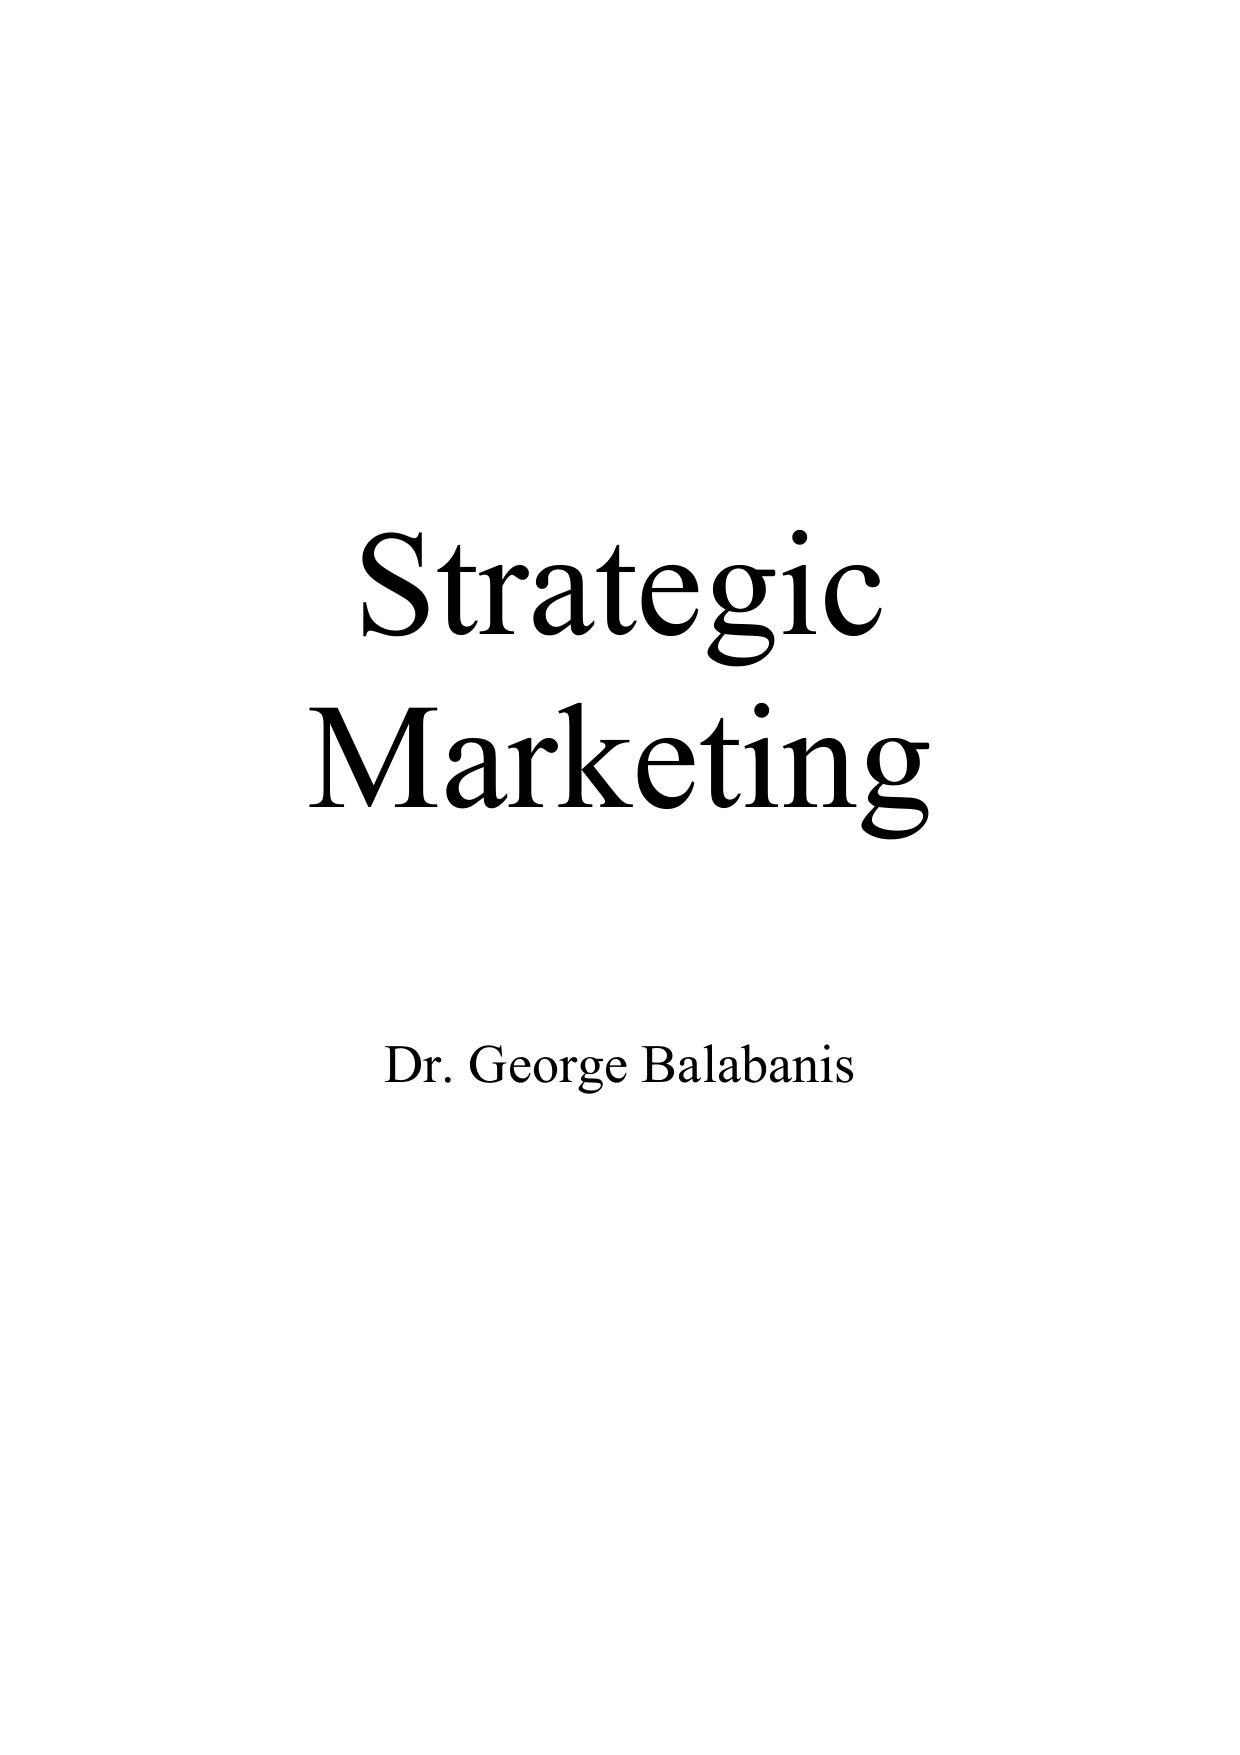 Microsoft Word - syllabus for Strategic Marketing 2003b.doc